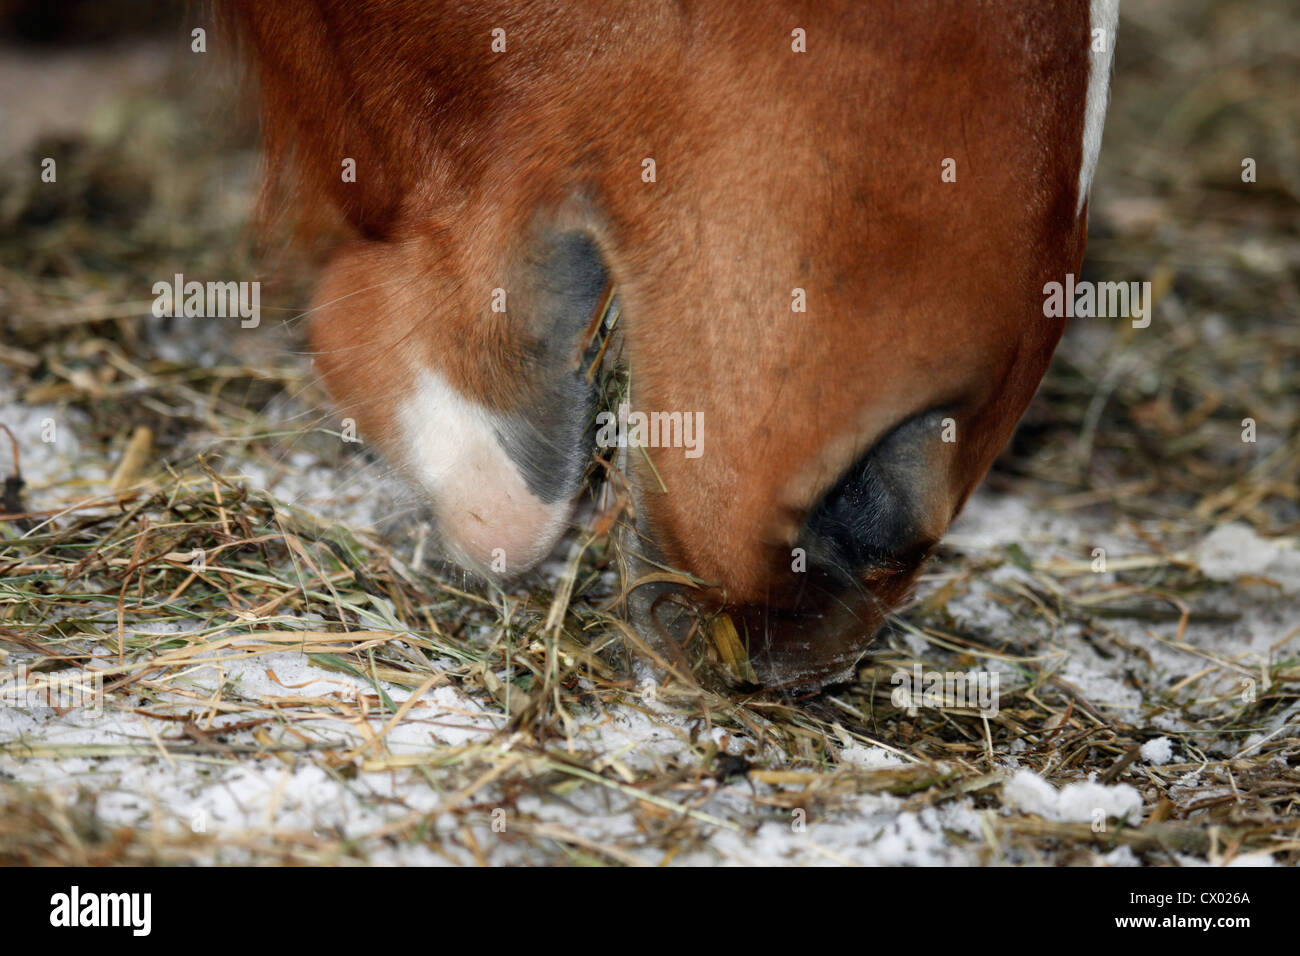 horse eats hay Stock Photo